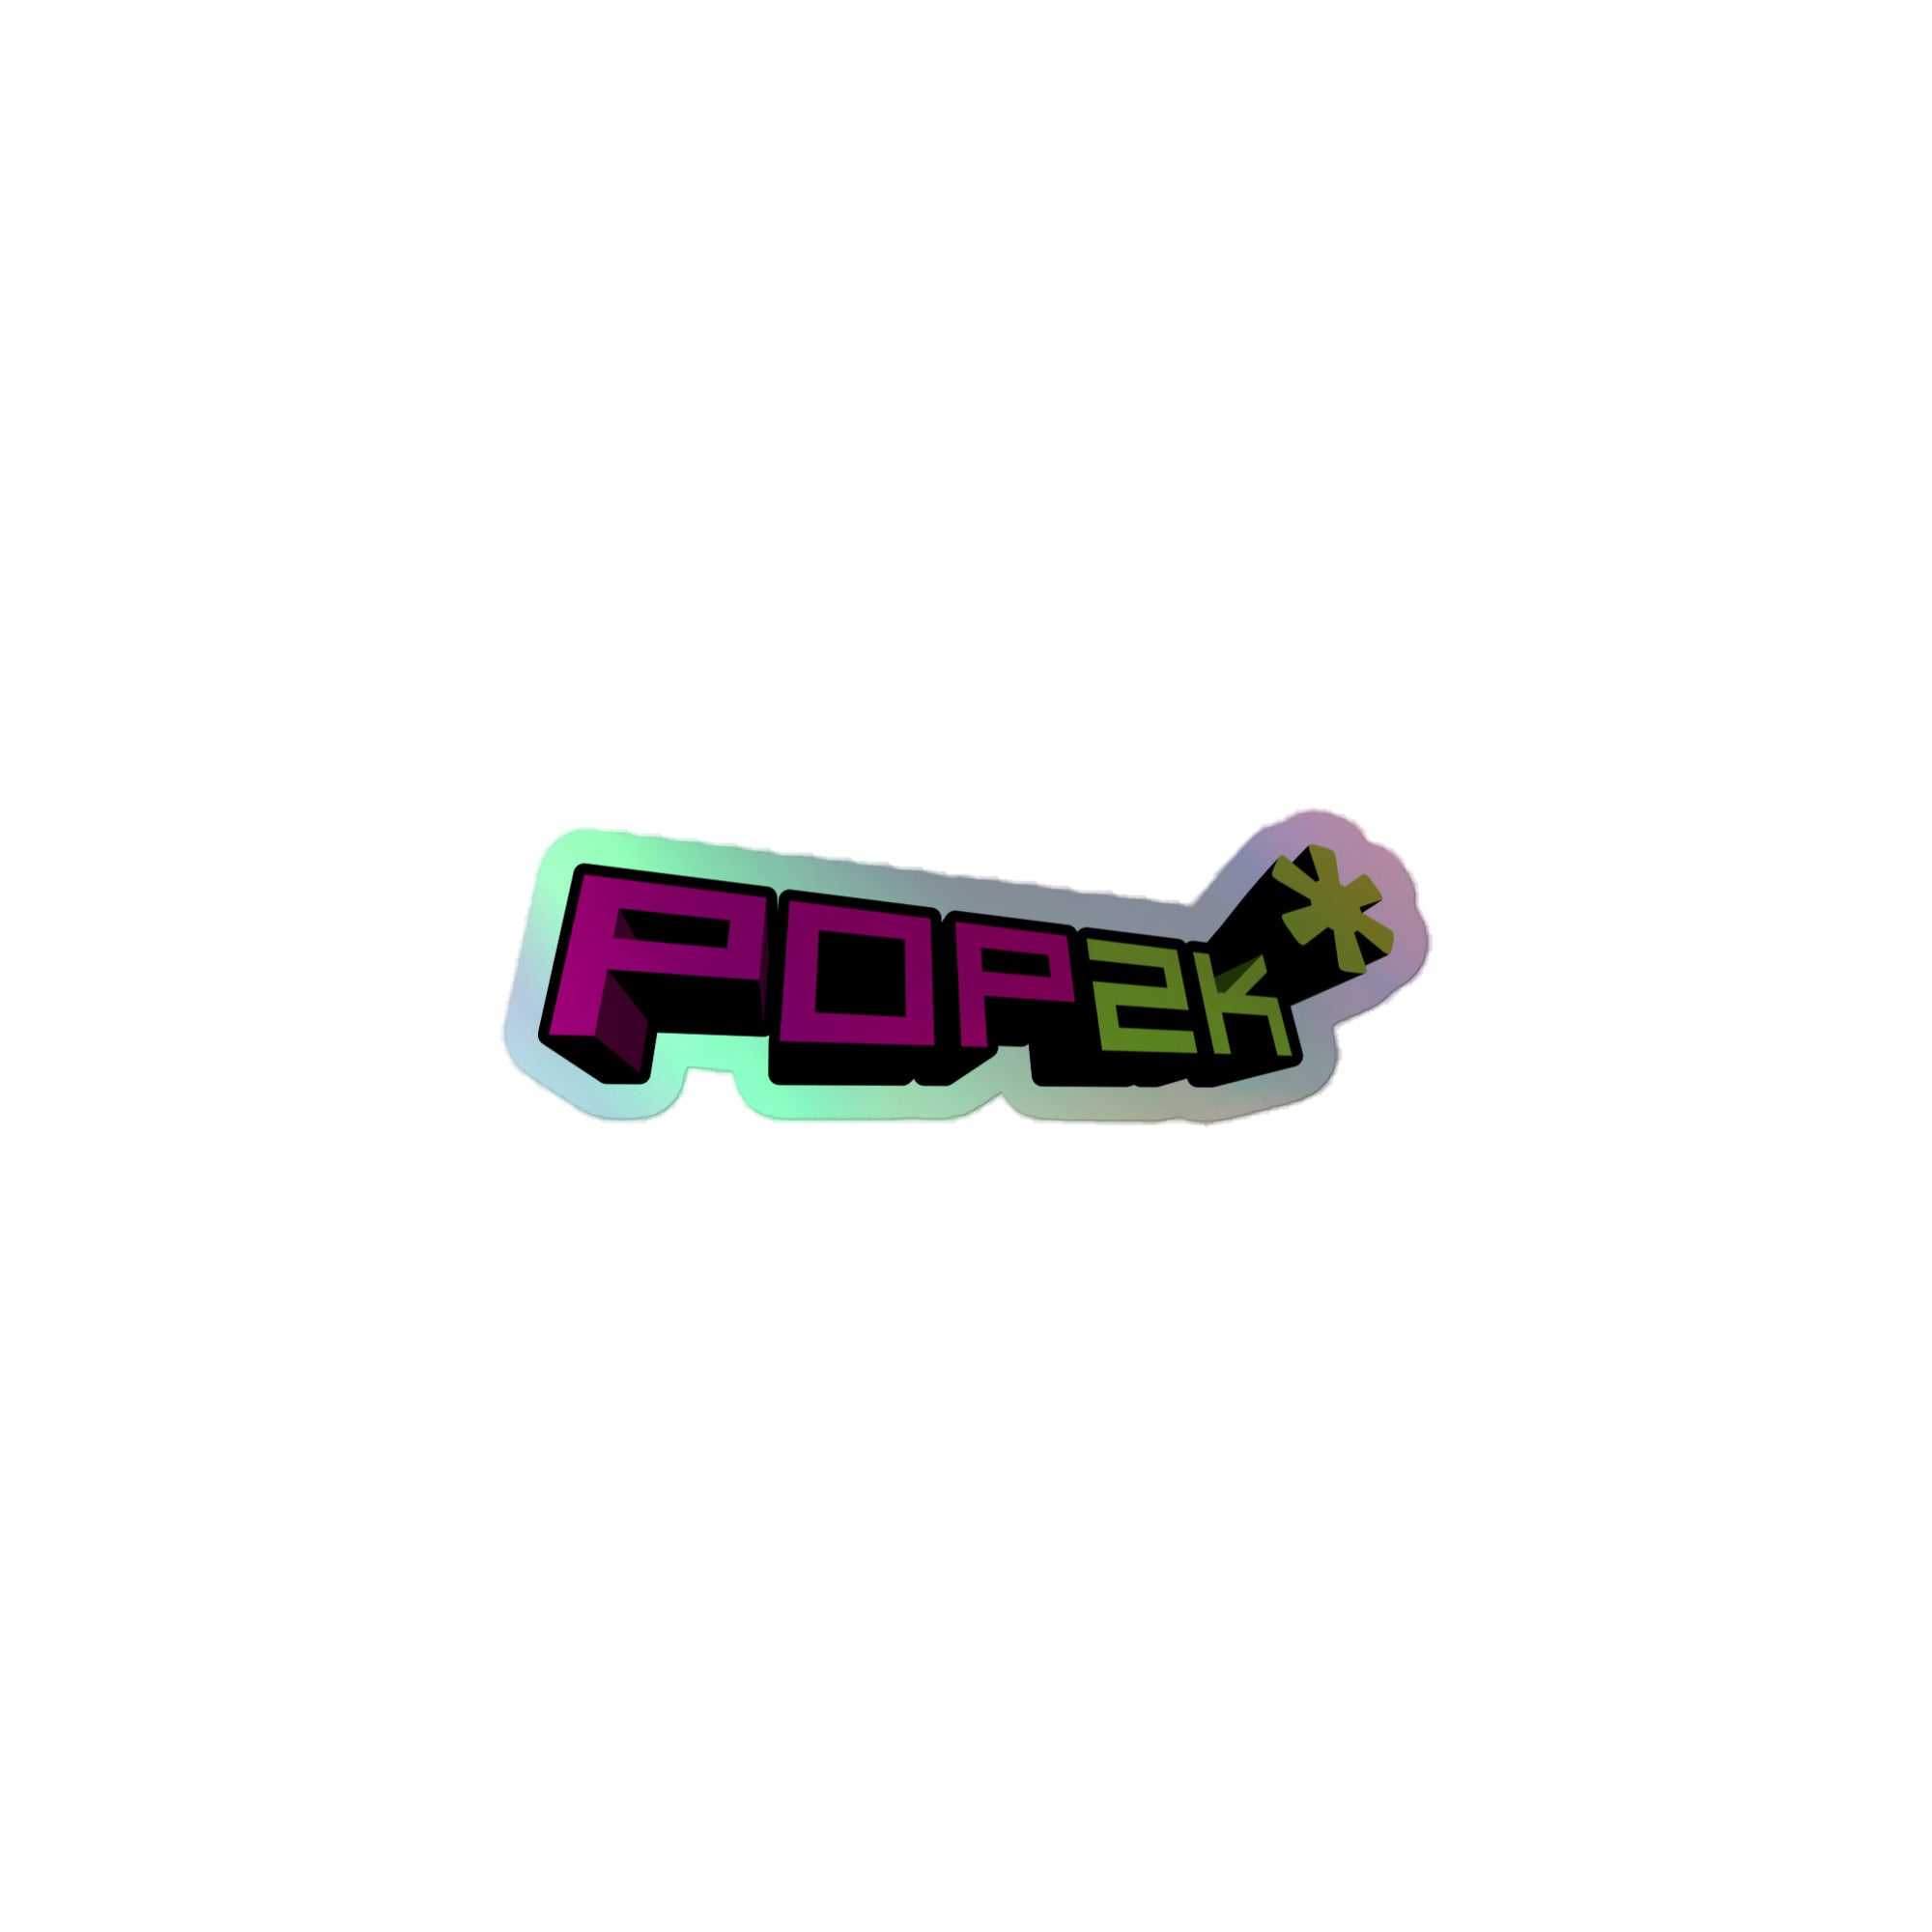 Pop 2k: Holographic Sticker